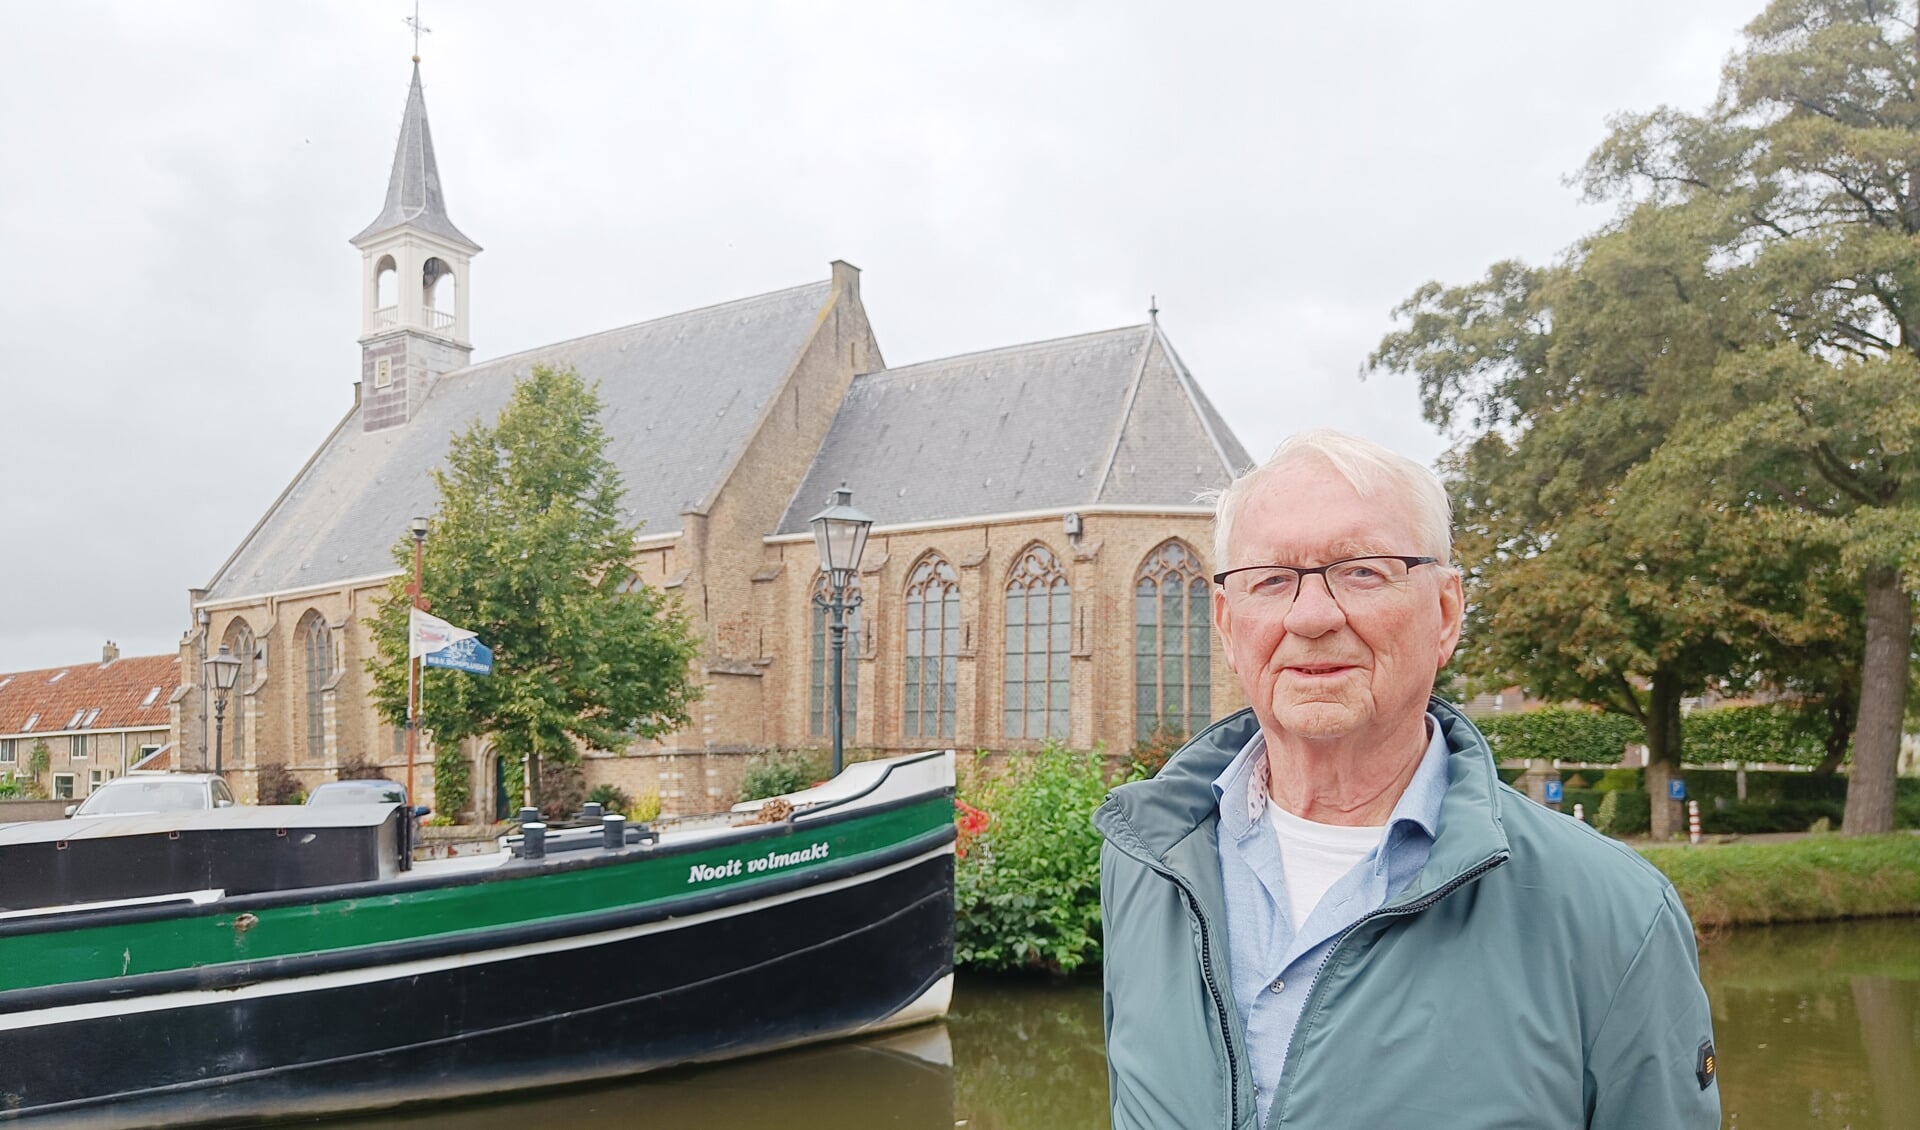 Aad van der Knaap bij het schip 'Nooit volmaakt' in Schipluiden.